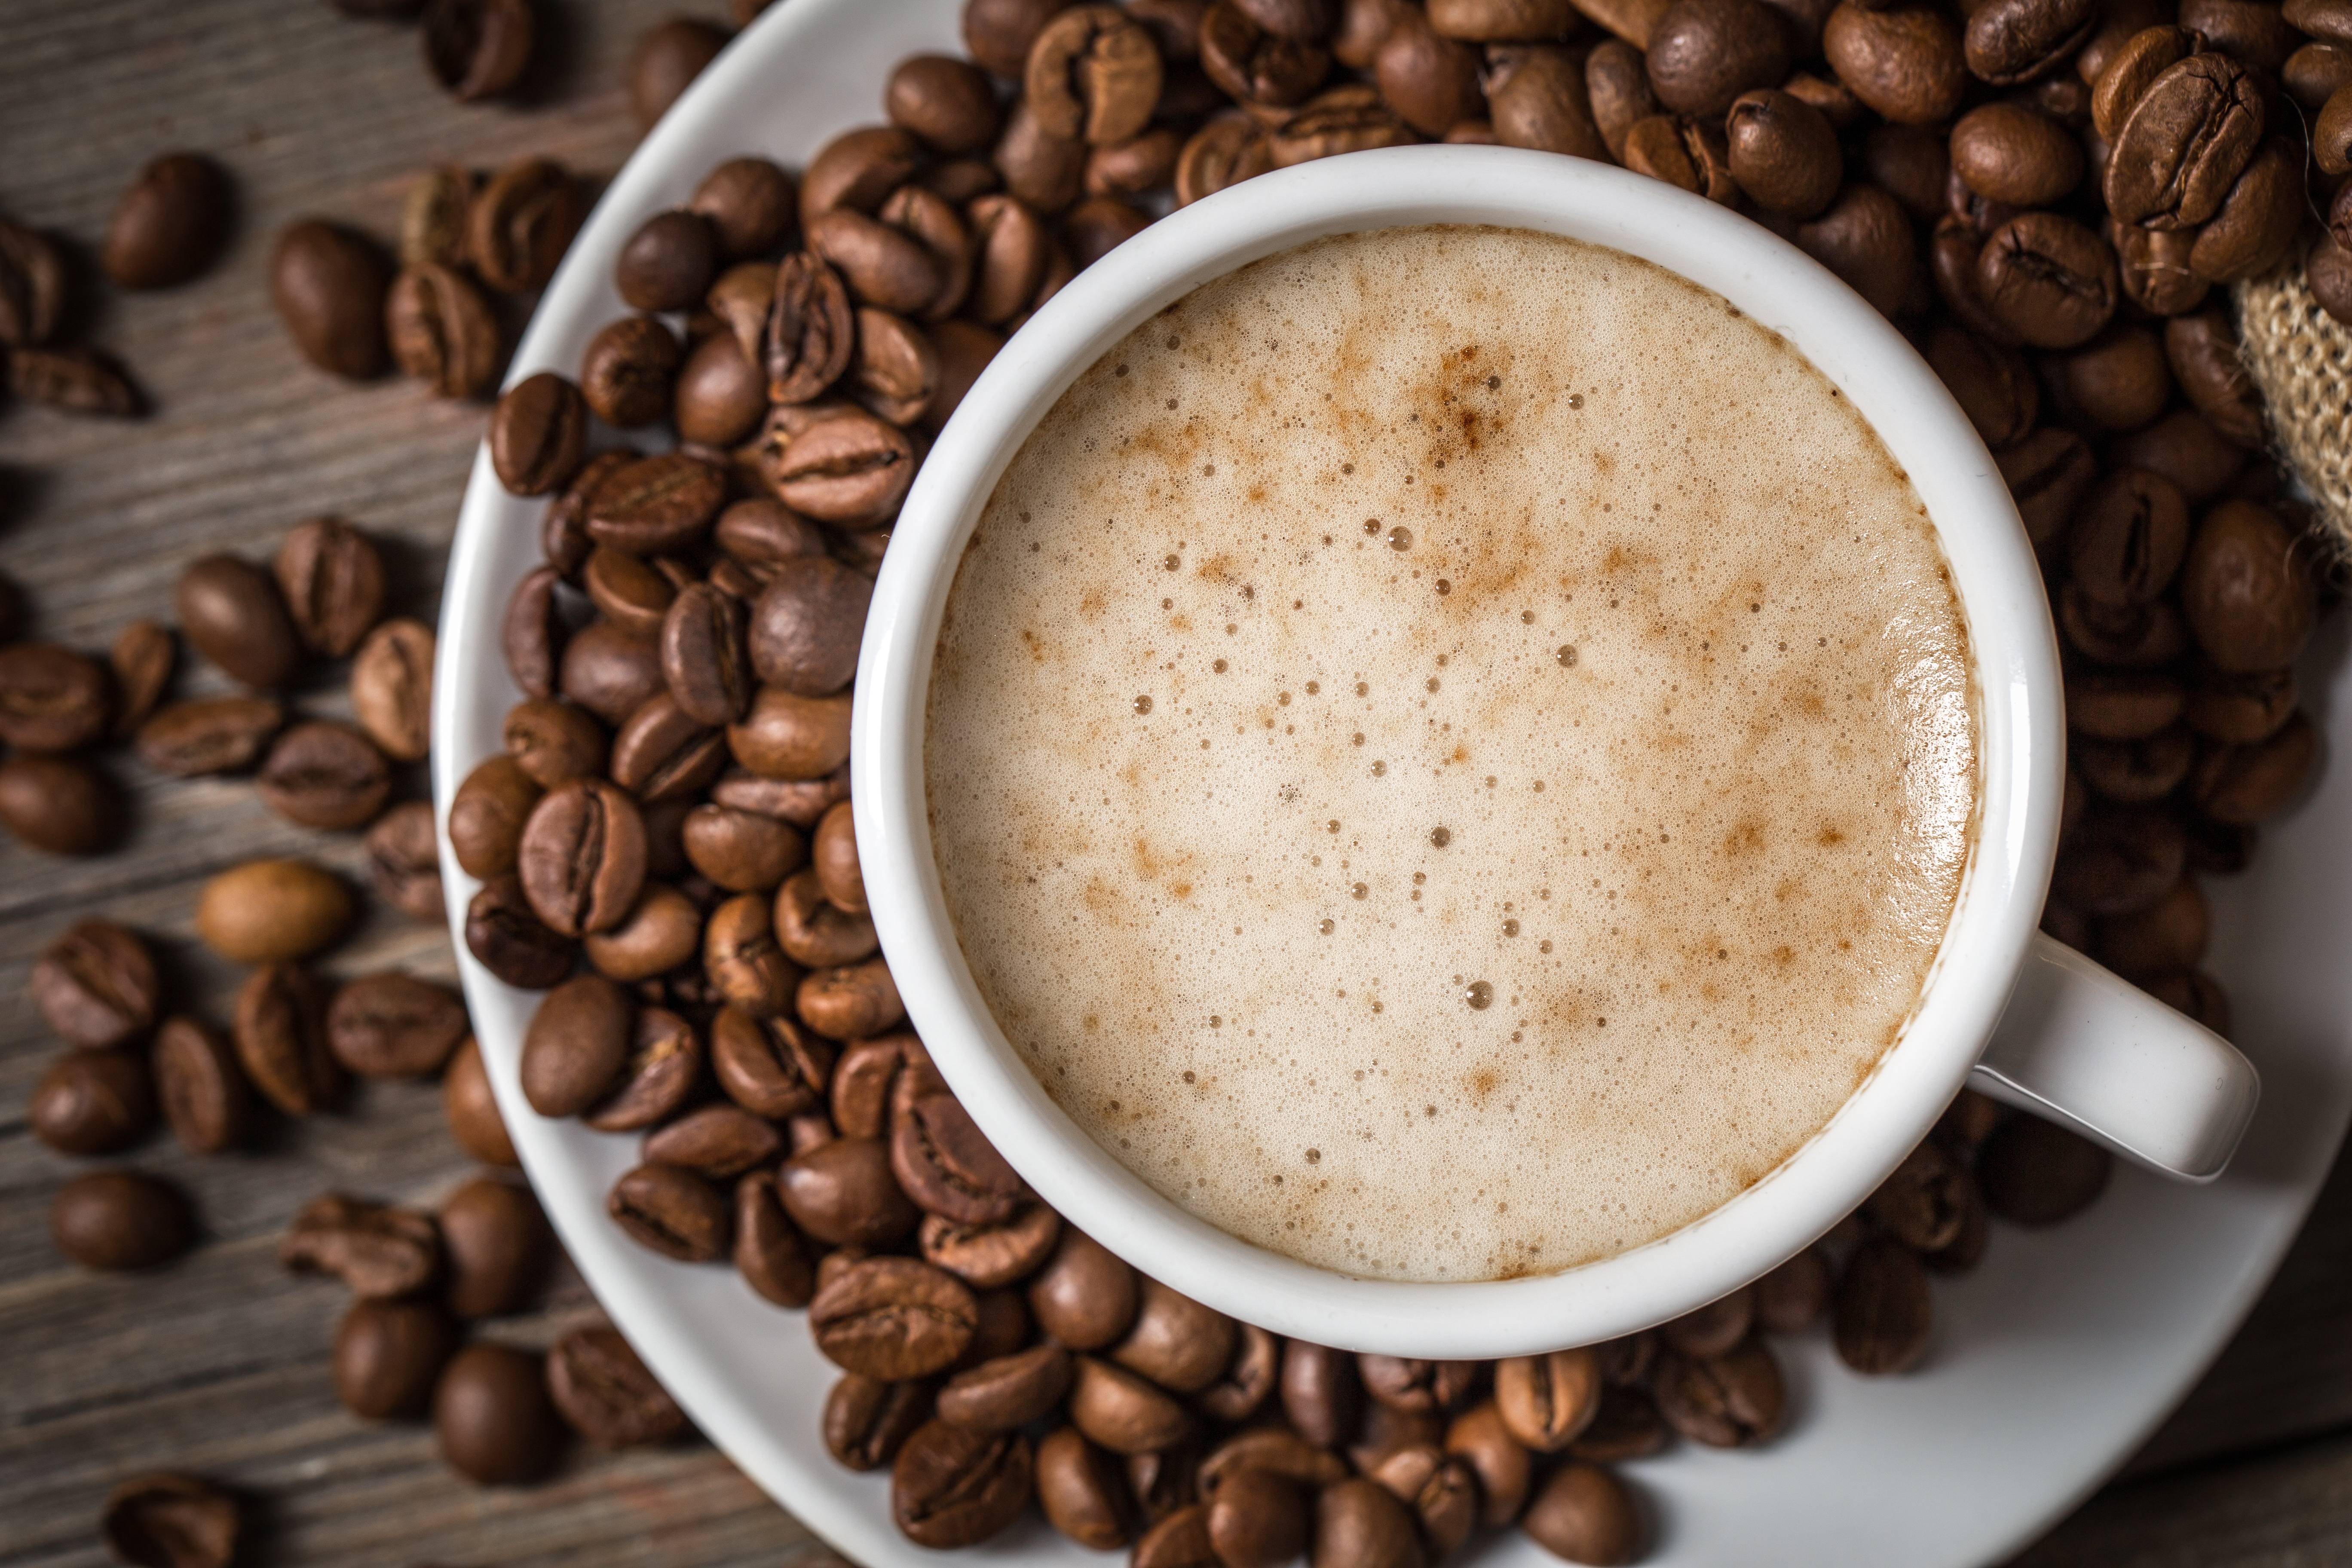 12 полезных способов применения кофейной гущи